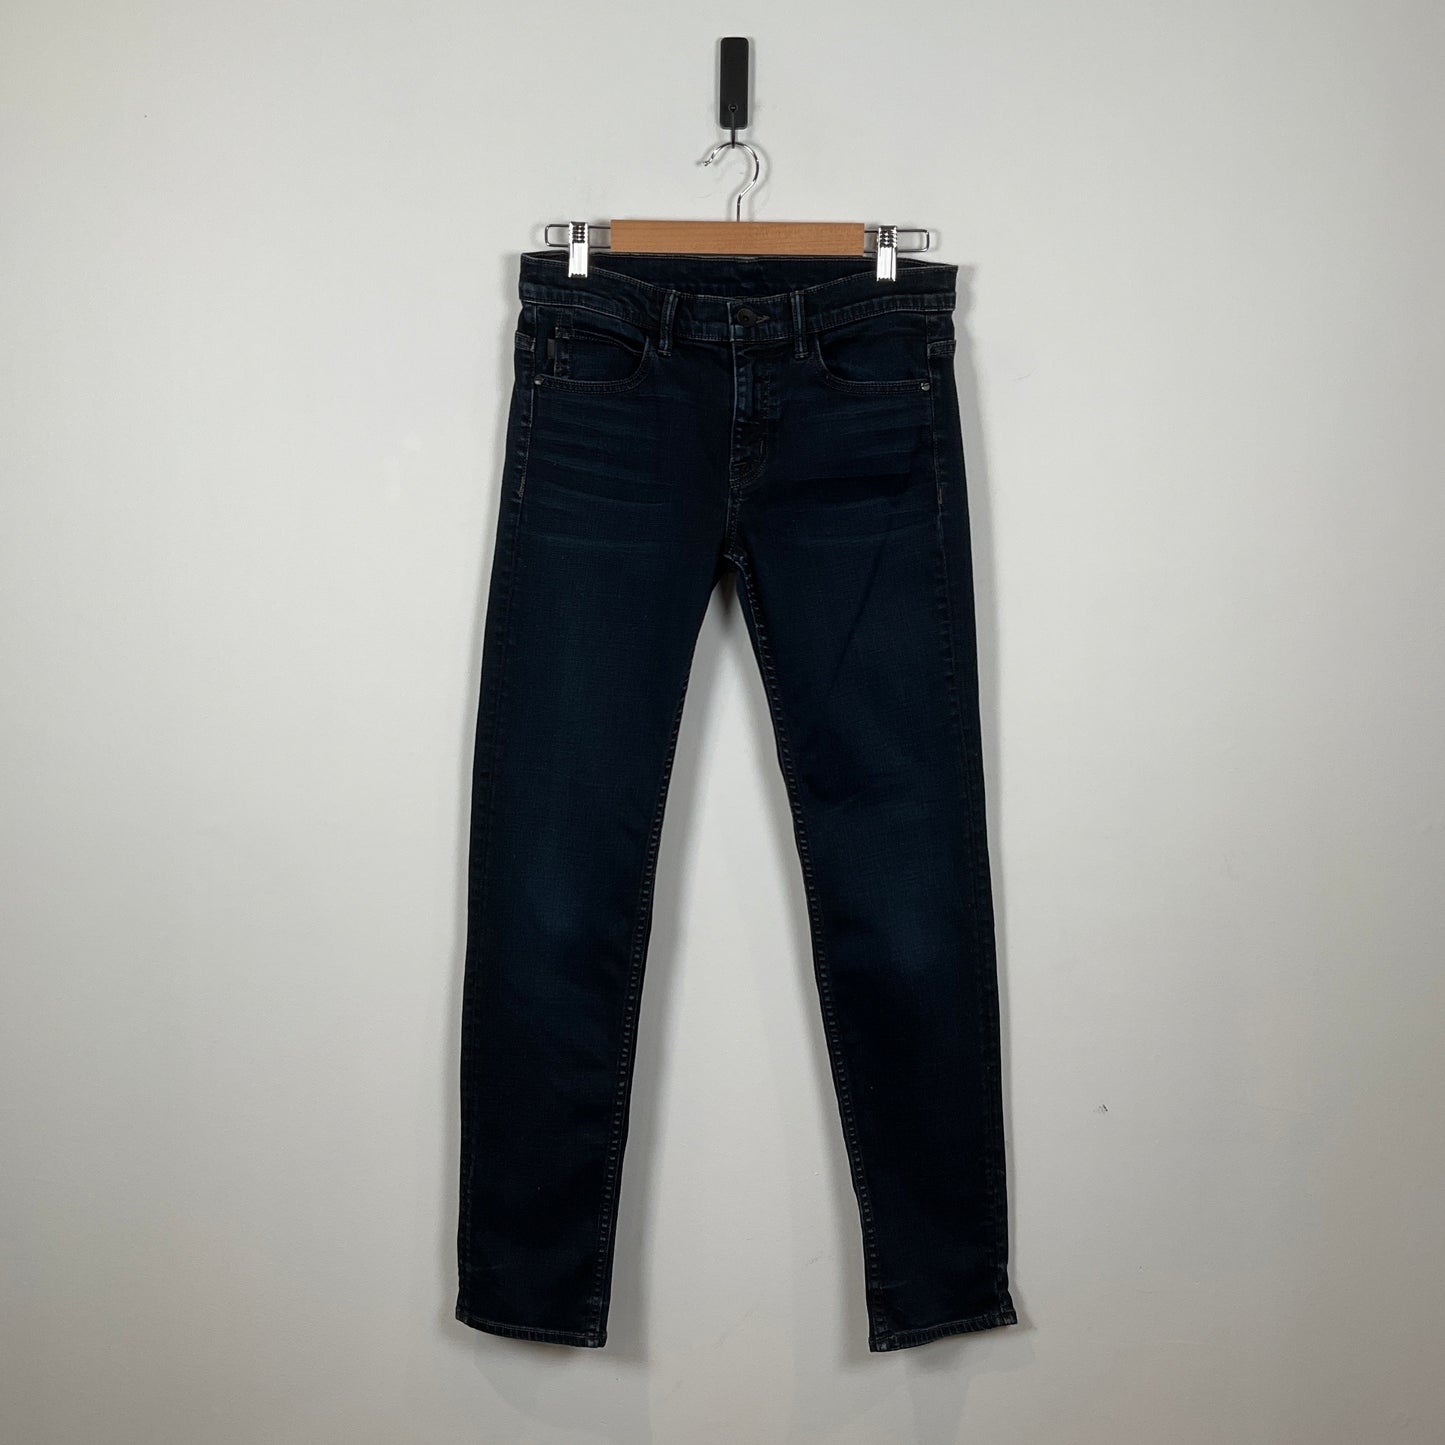 Helmut Lang - Jeans - 27 - Pants